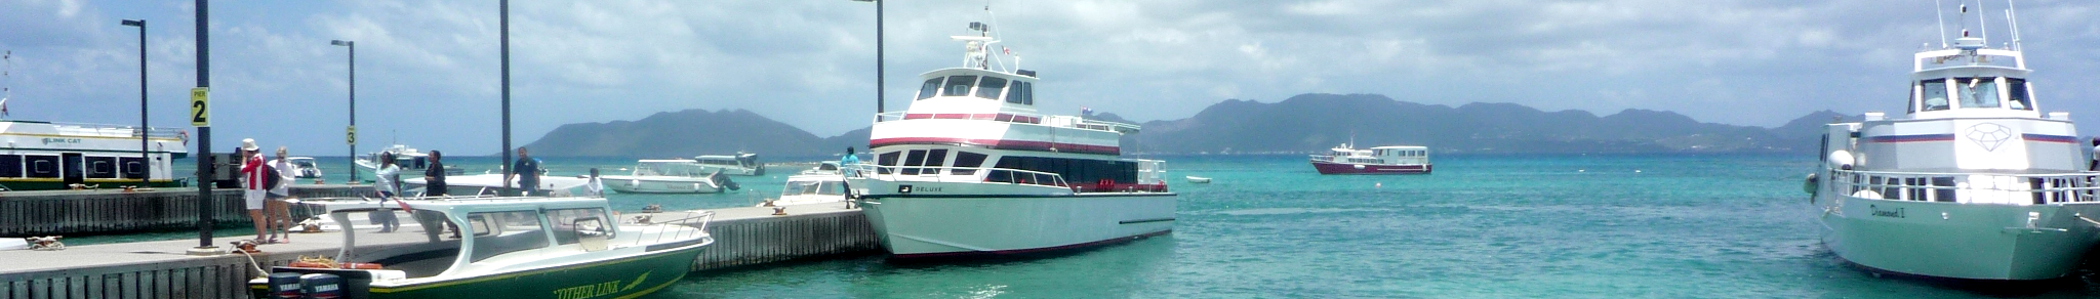 Nuovi orari dei traghetti in partenza da Anguilla e St. Martin